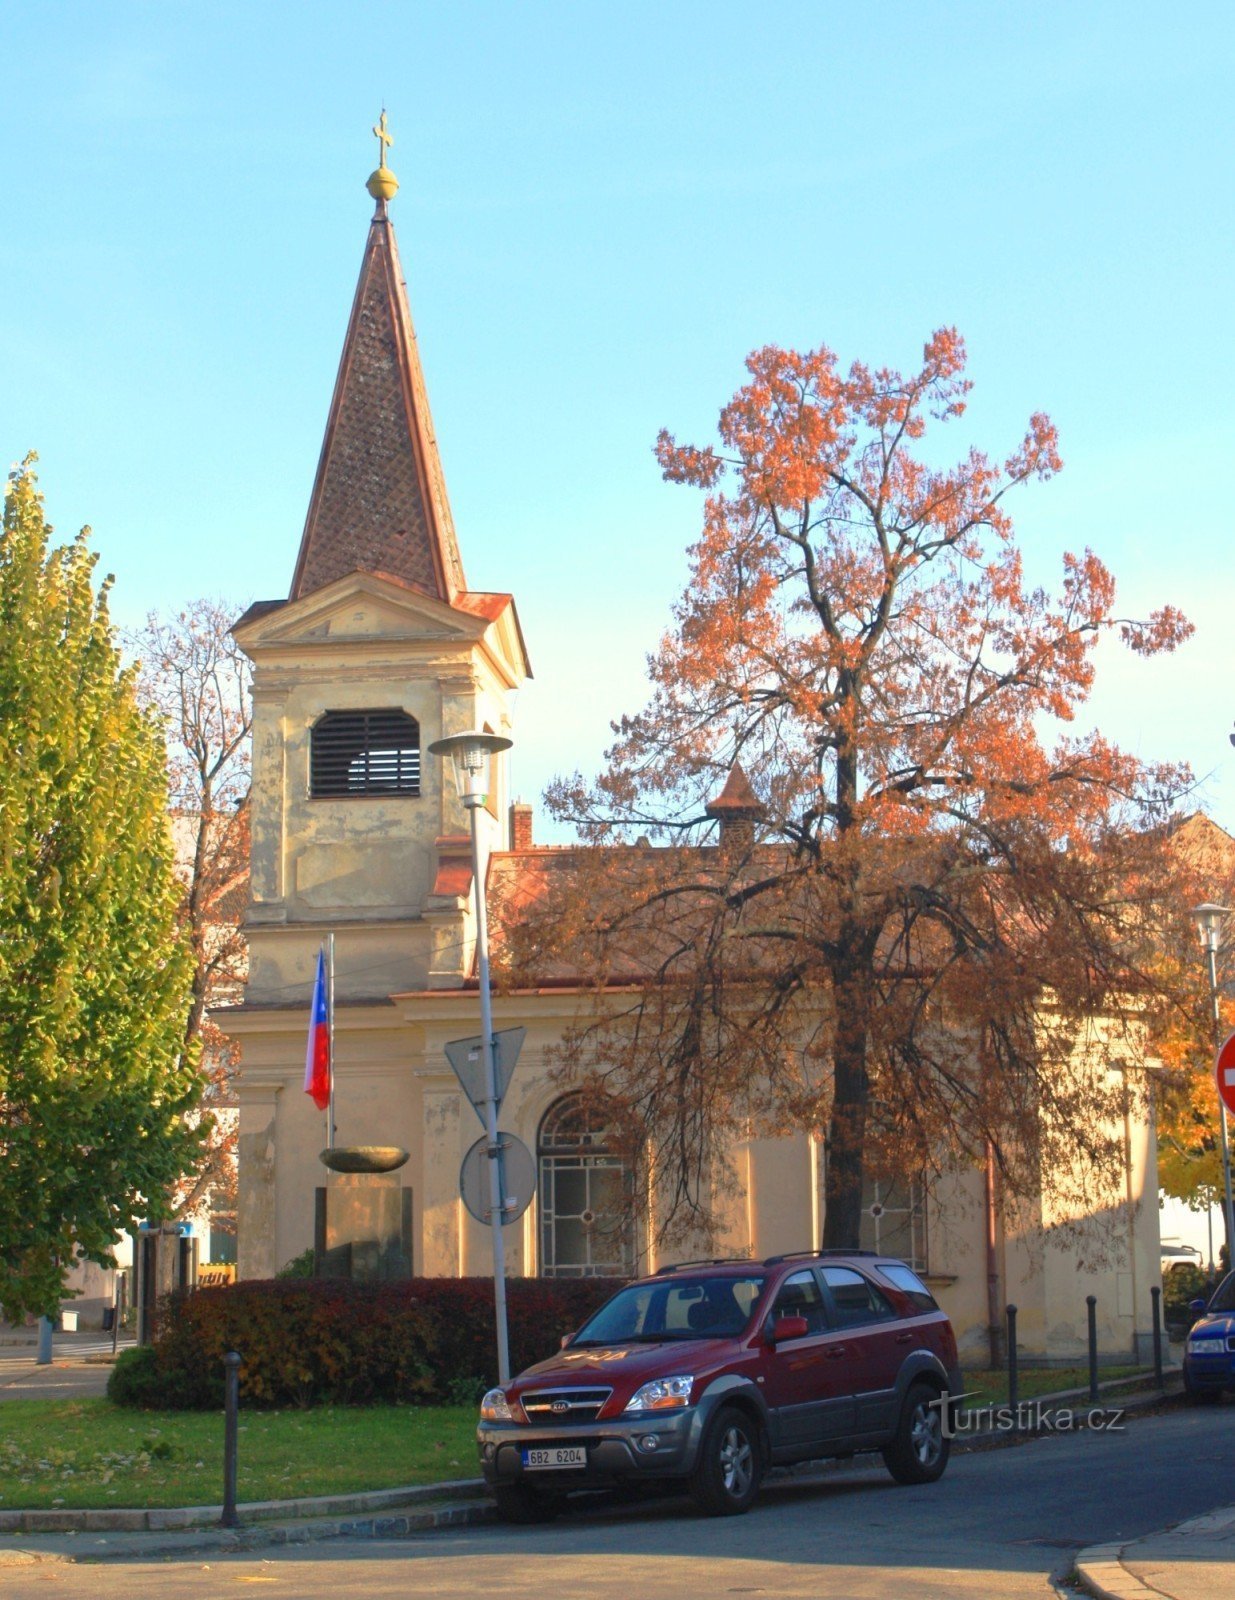 Kaplica św. Wacława